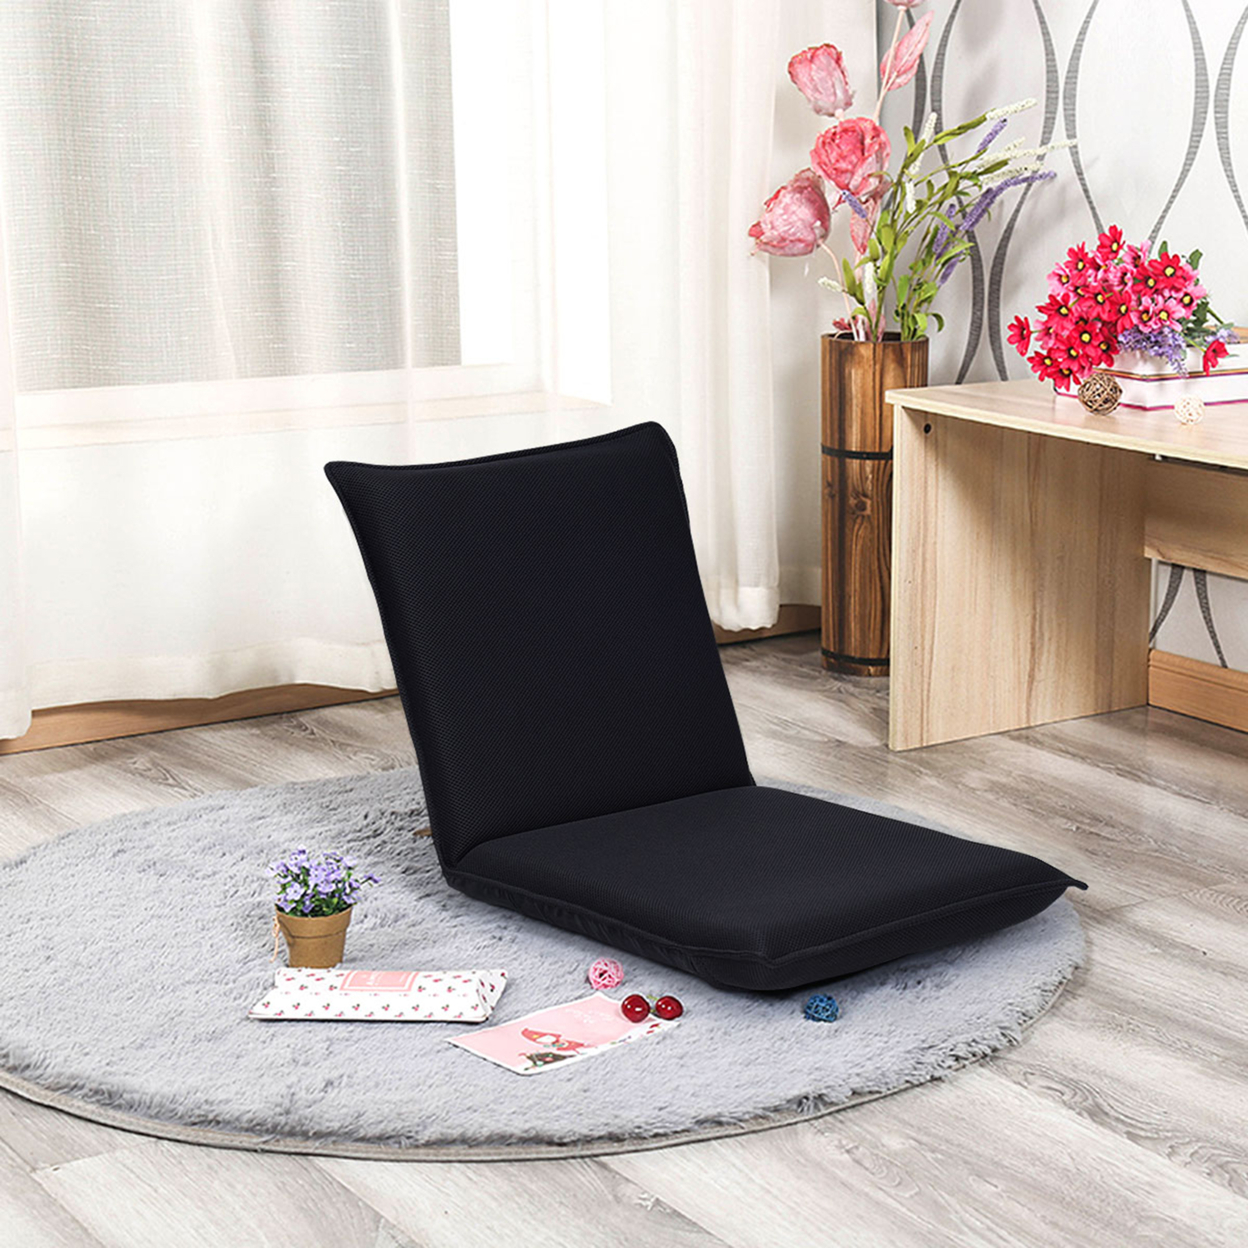 Adjustable 6-Position Floor Chair Folding Lazy Man Sofa Chair Multiangle Black